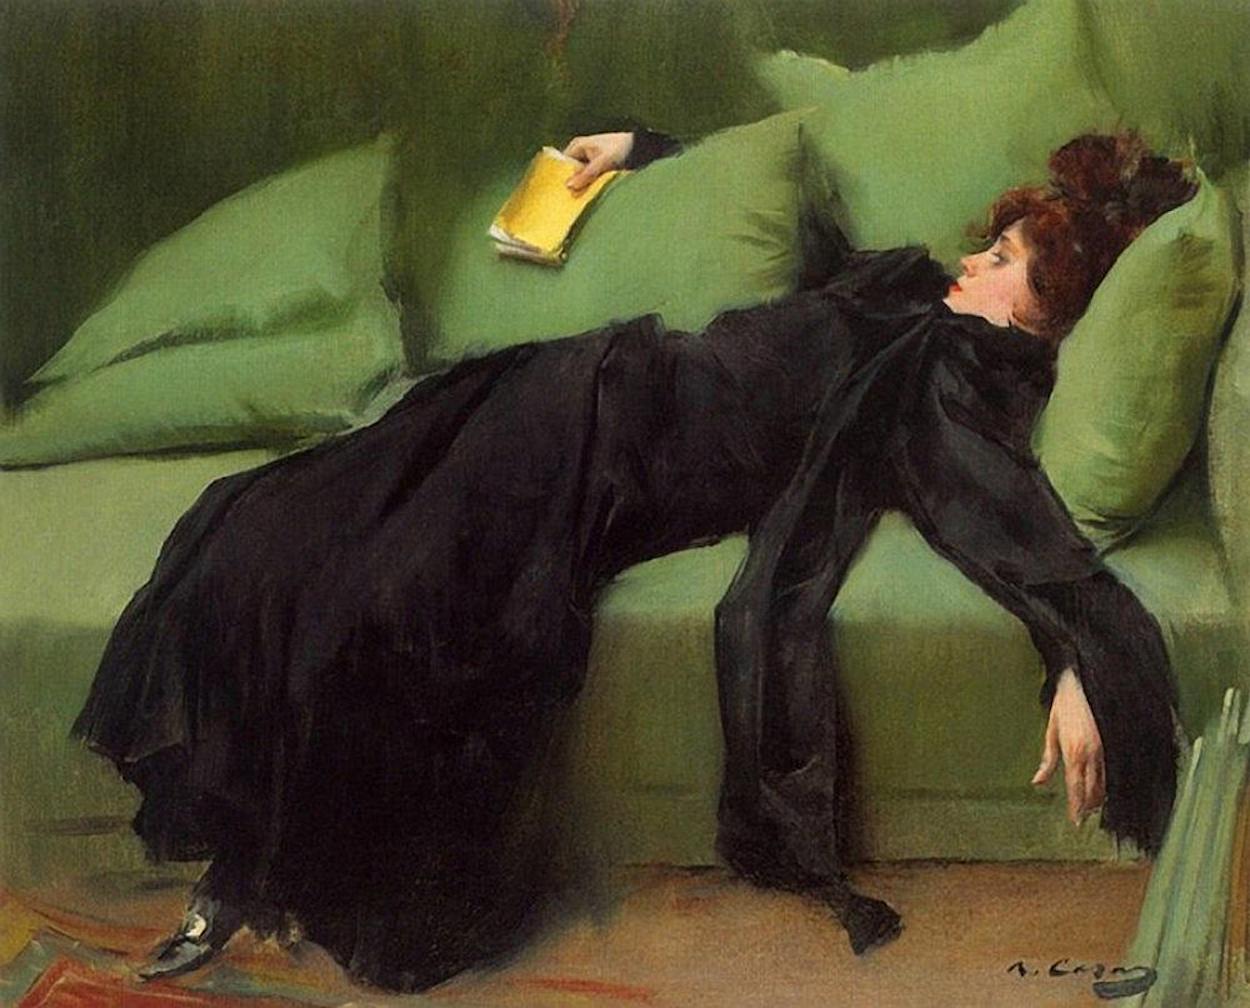 الشابة المنهكة. بعد الحفلة الراقصة by Ramon Casas - 1899 م - 56 x 46.5 سم 